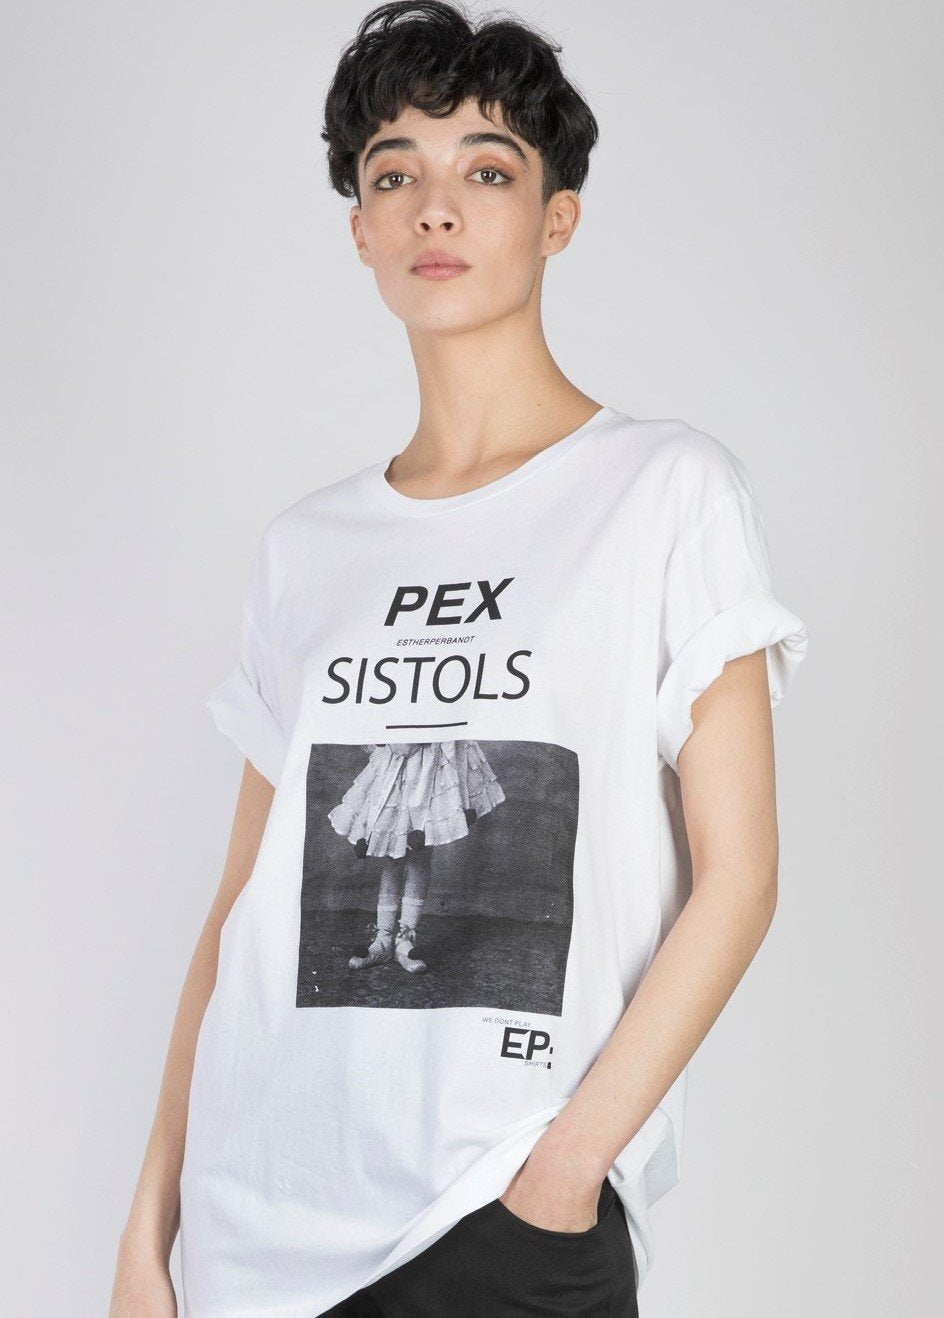 PEX SISTOLS - esther perbandt T-shirt | esther perbandt